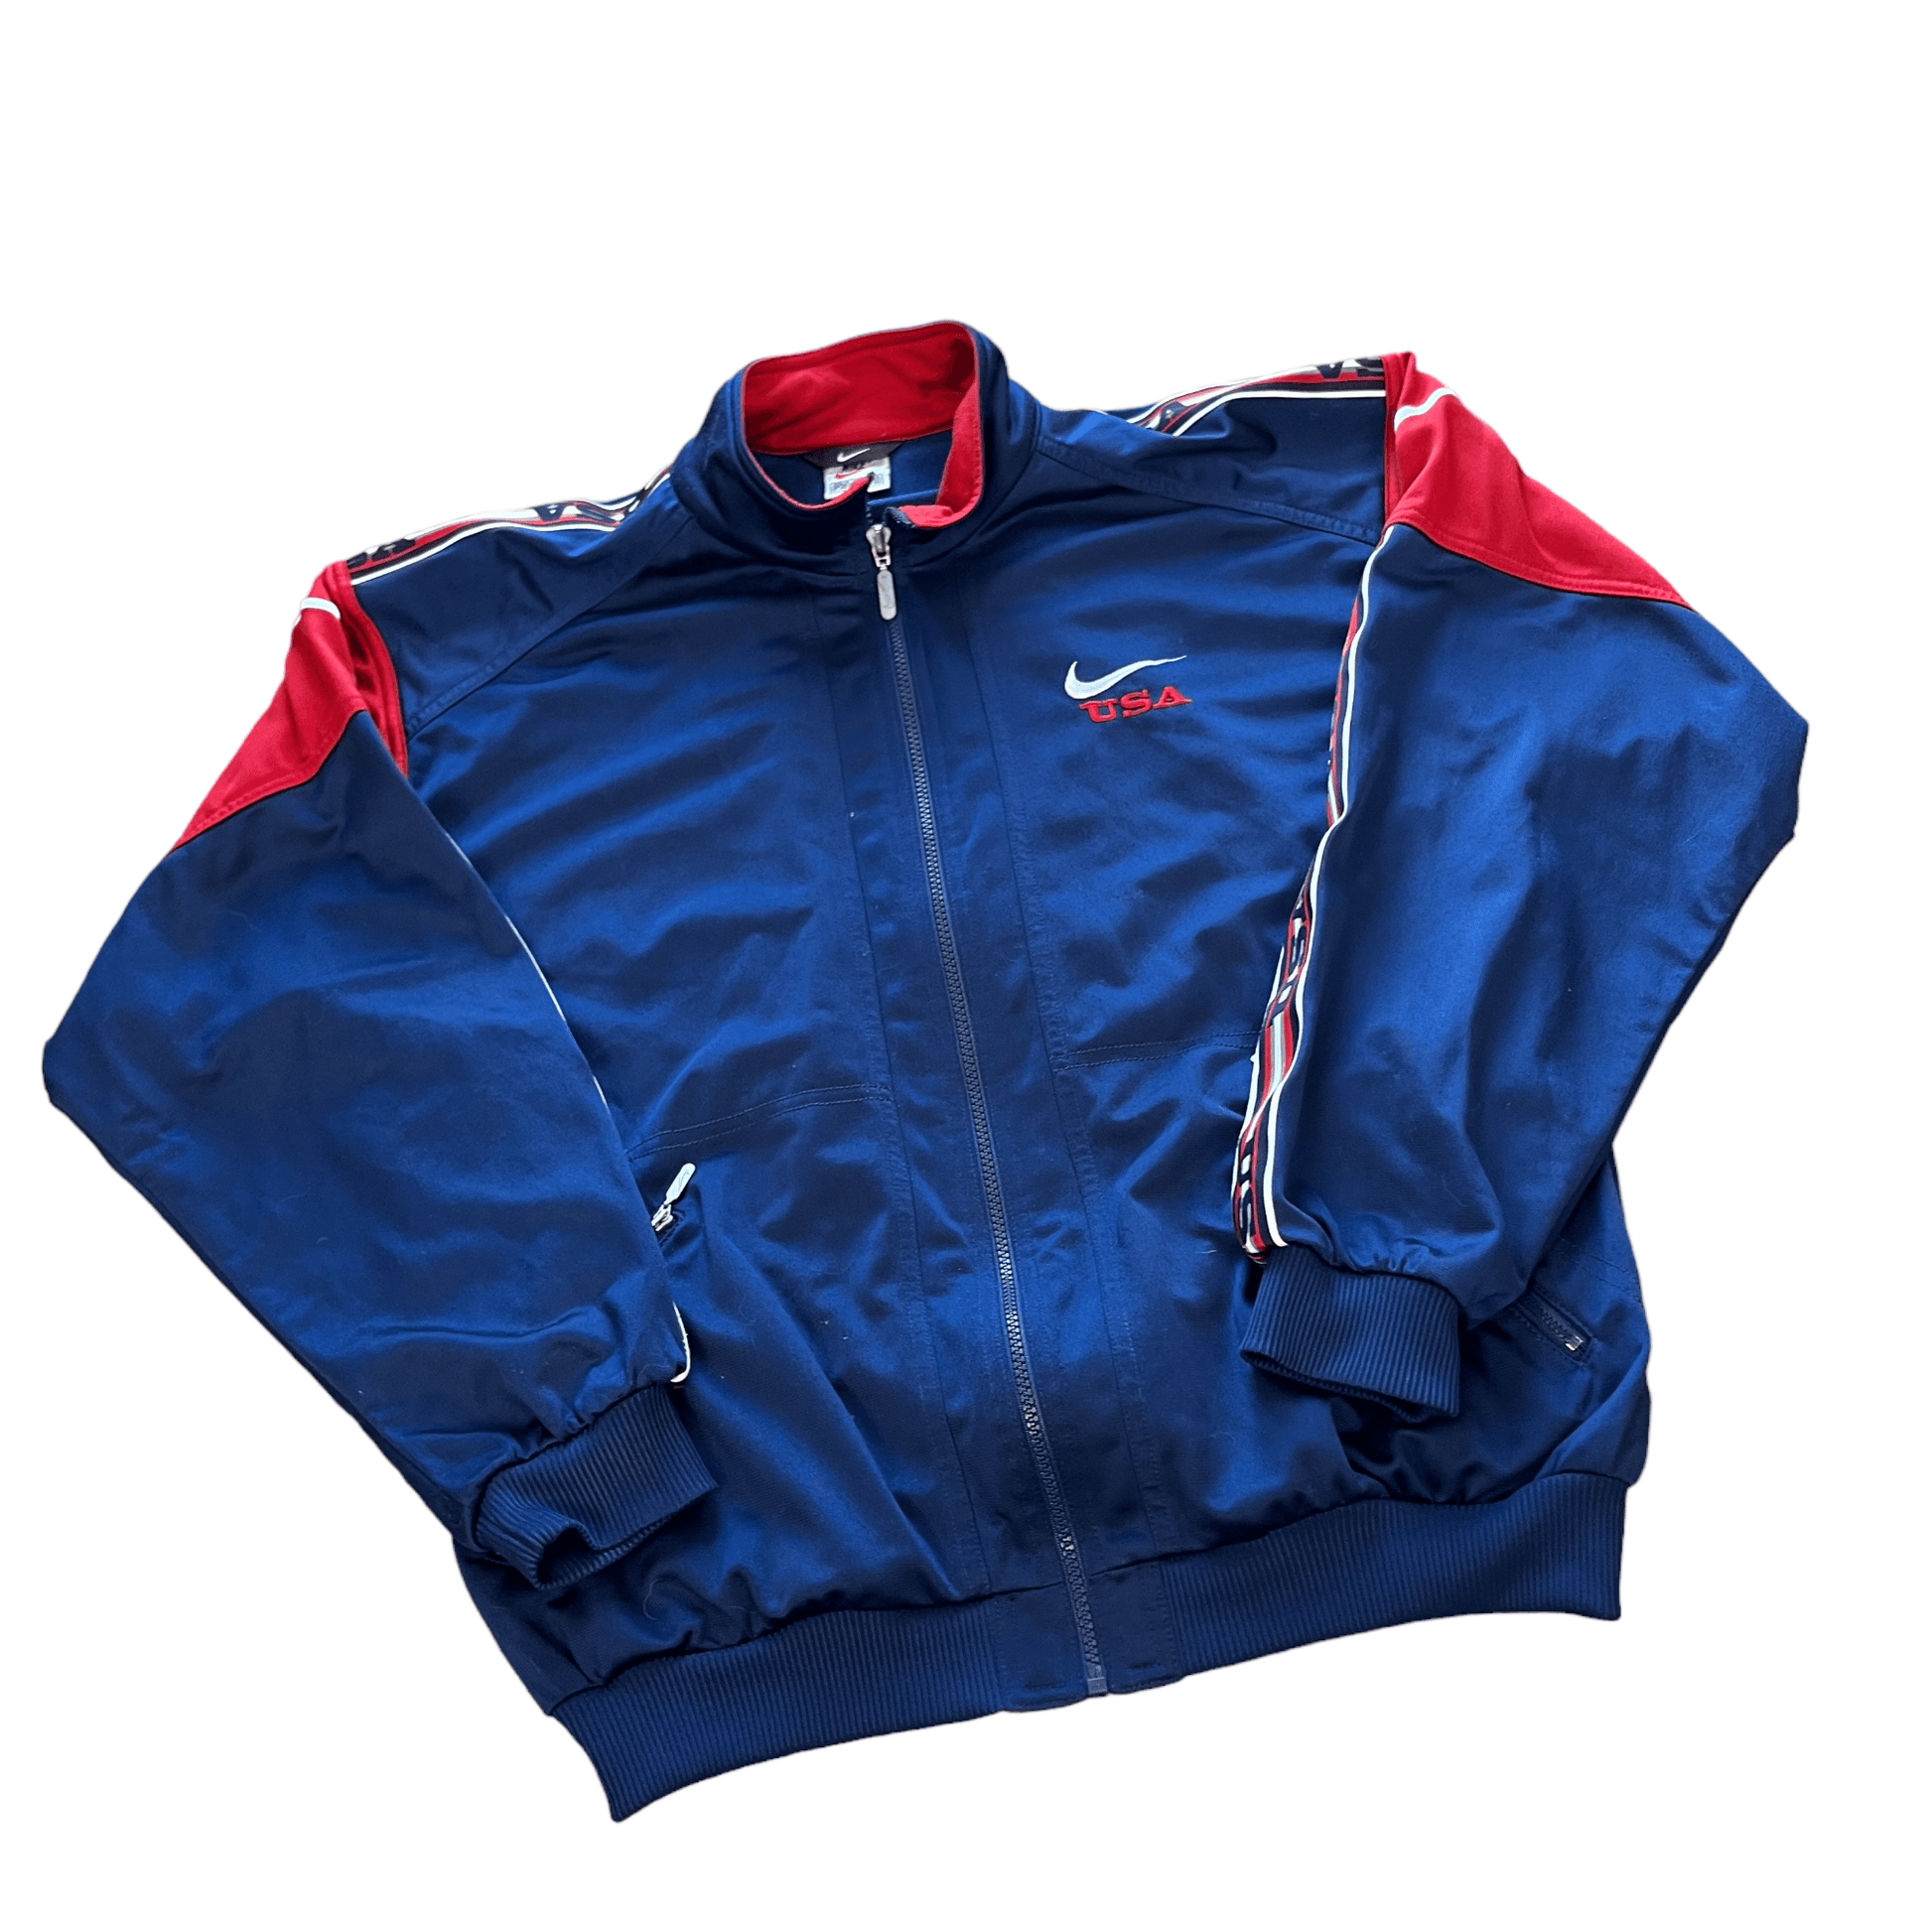 Vintage 90s Navy Blue + Red Nike Jacket - Medium - The Streetwear Studio